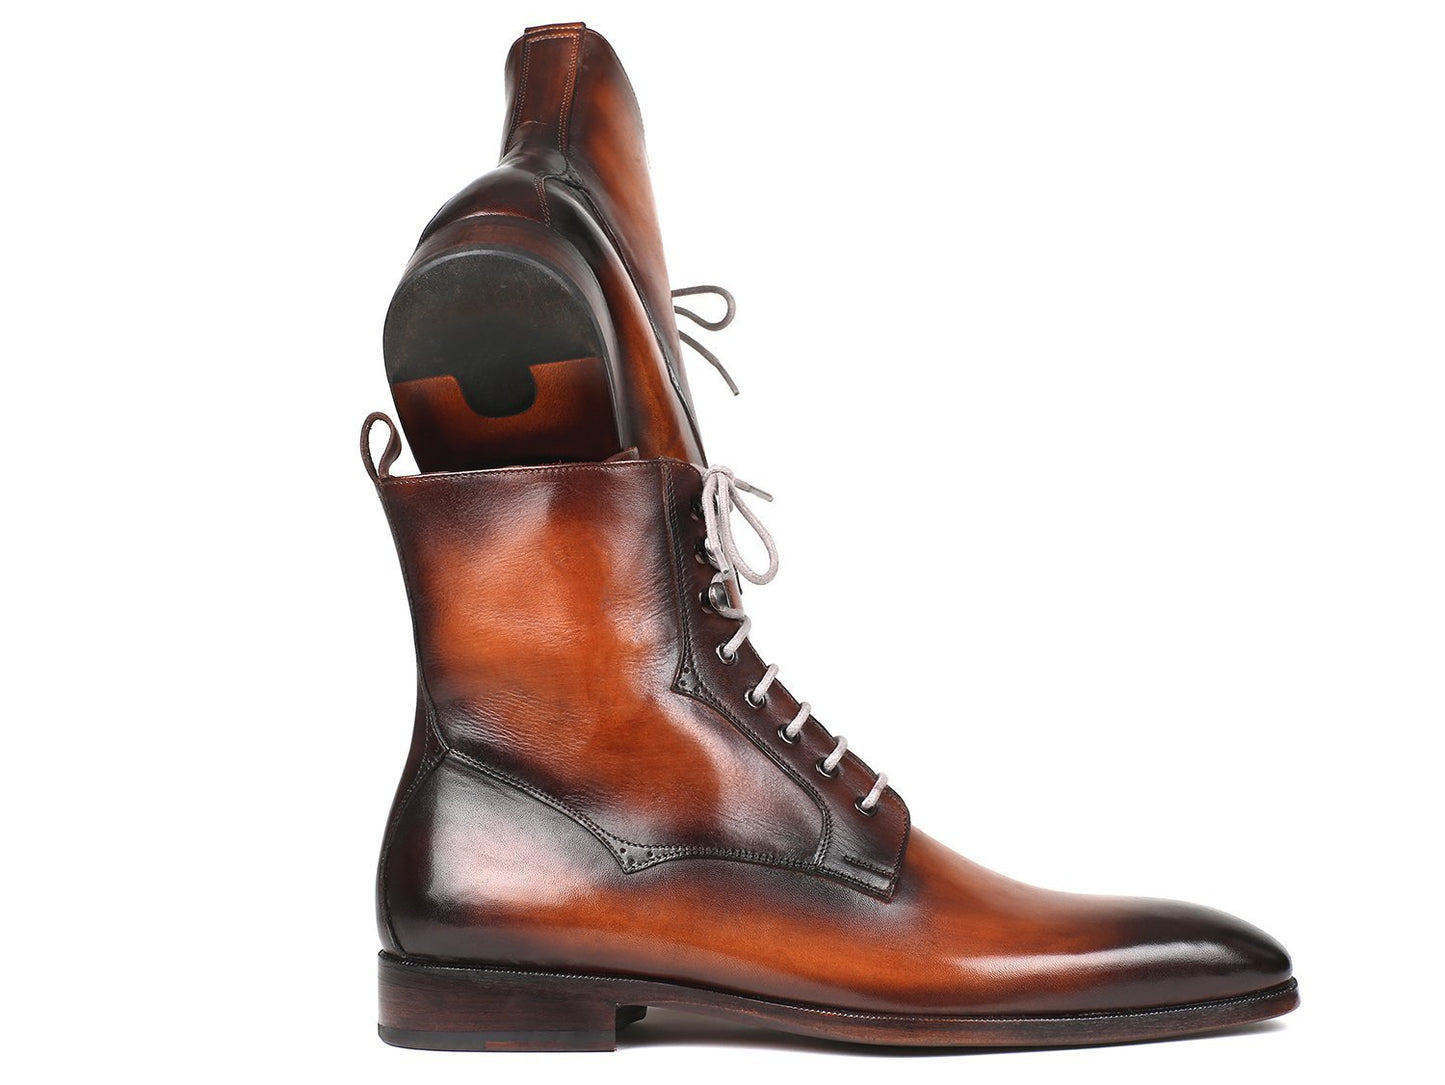 TEEK - Paul Parkman Hand-Painted Boots SHOES theteekdotcom   